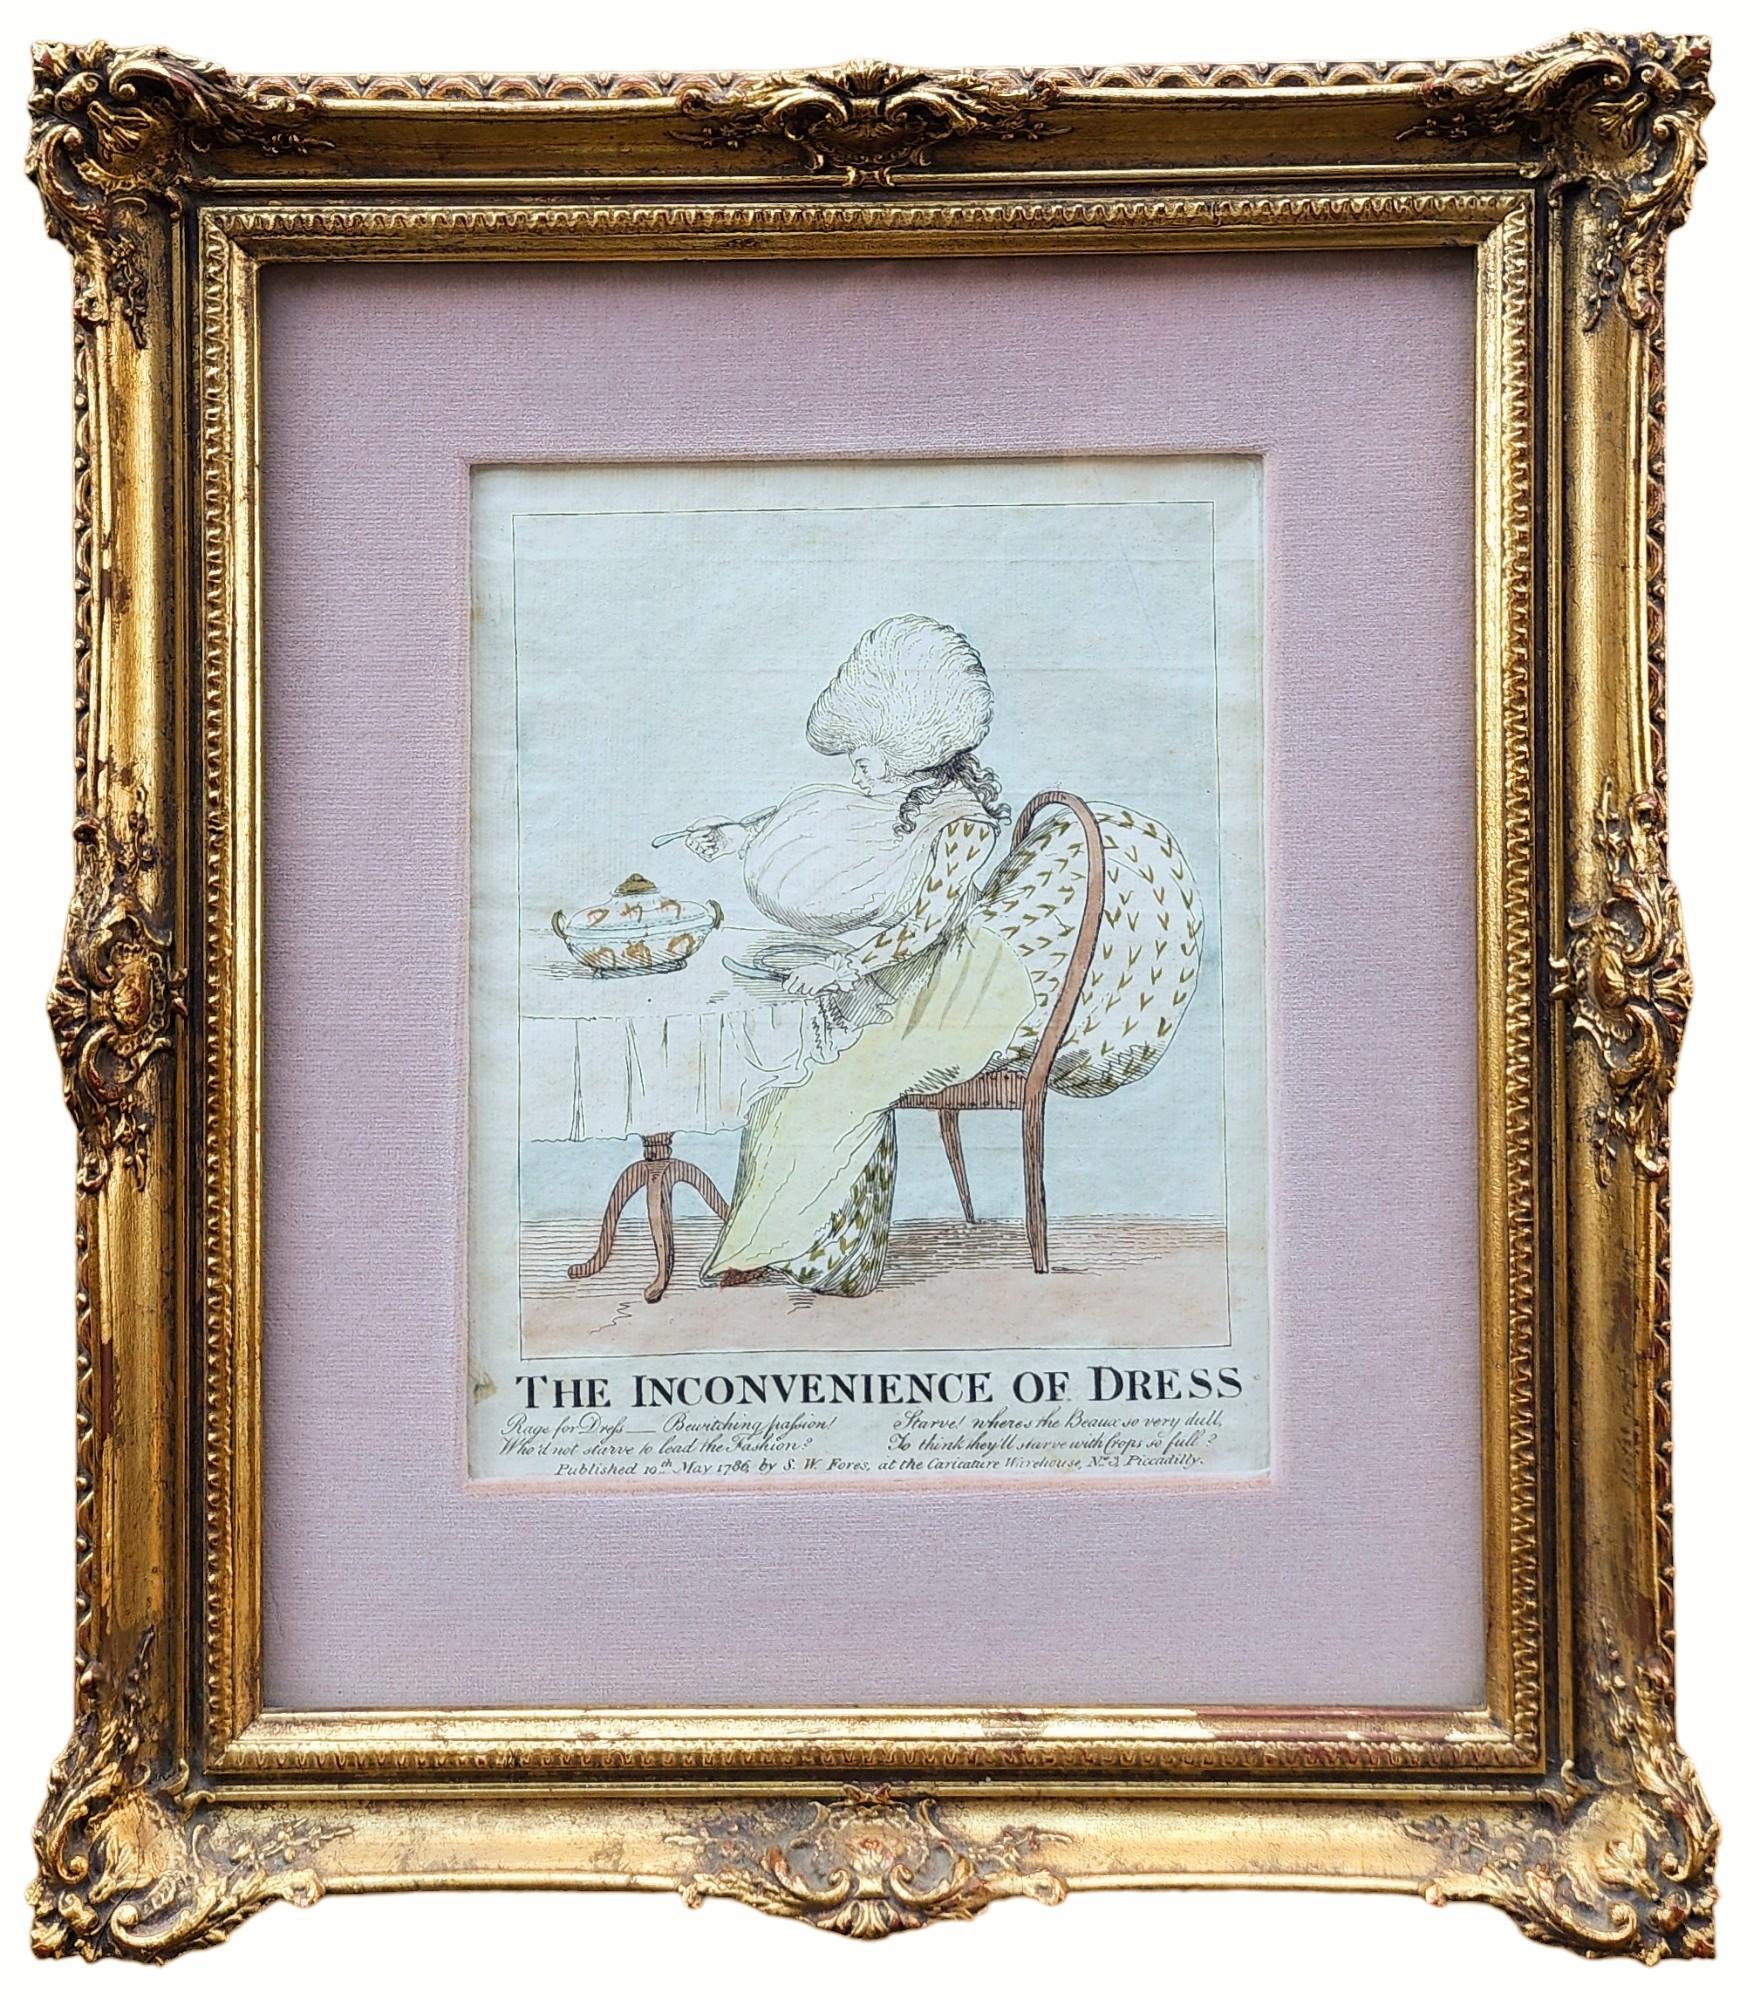 The Inconvenience of Dress, Art de la caricature britannique - Print de George Townley Stubbs